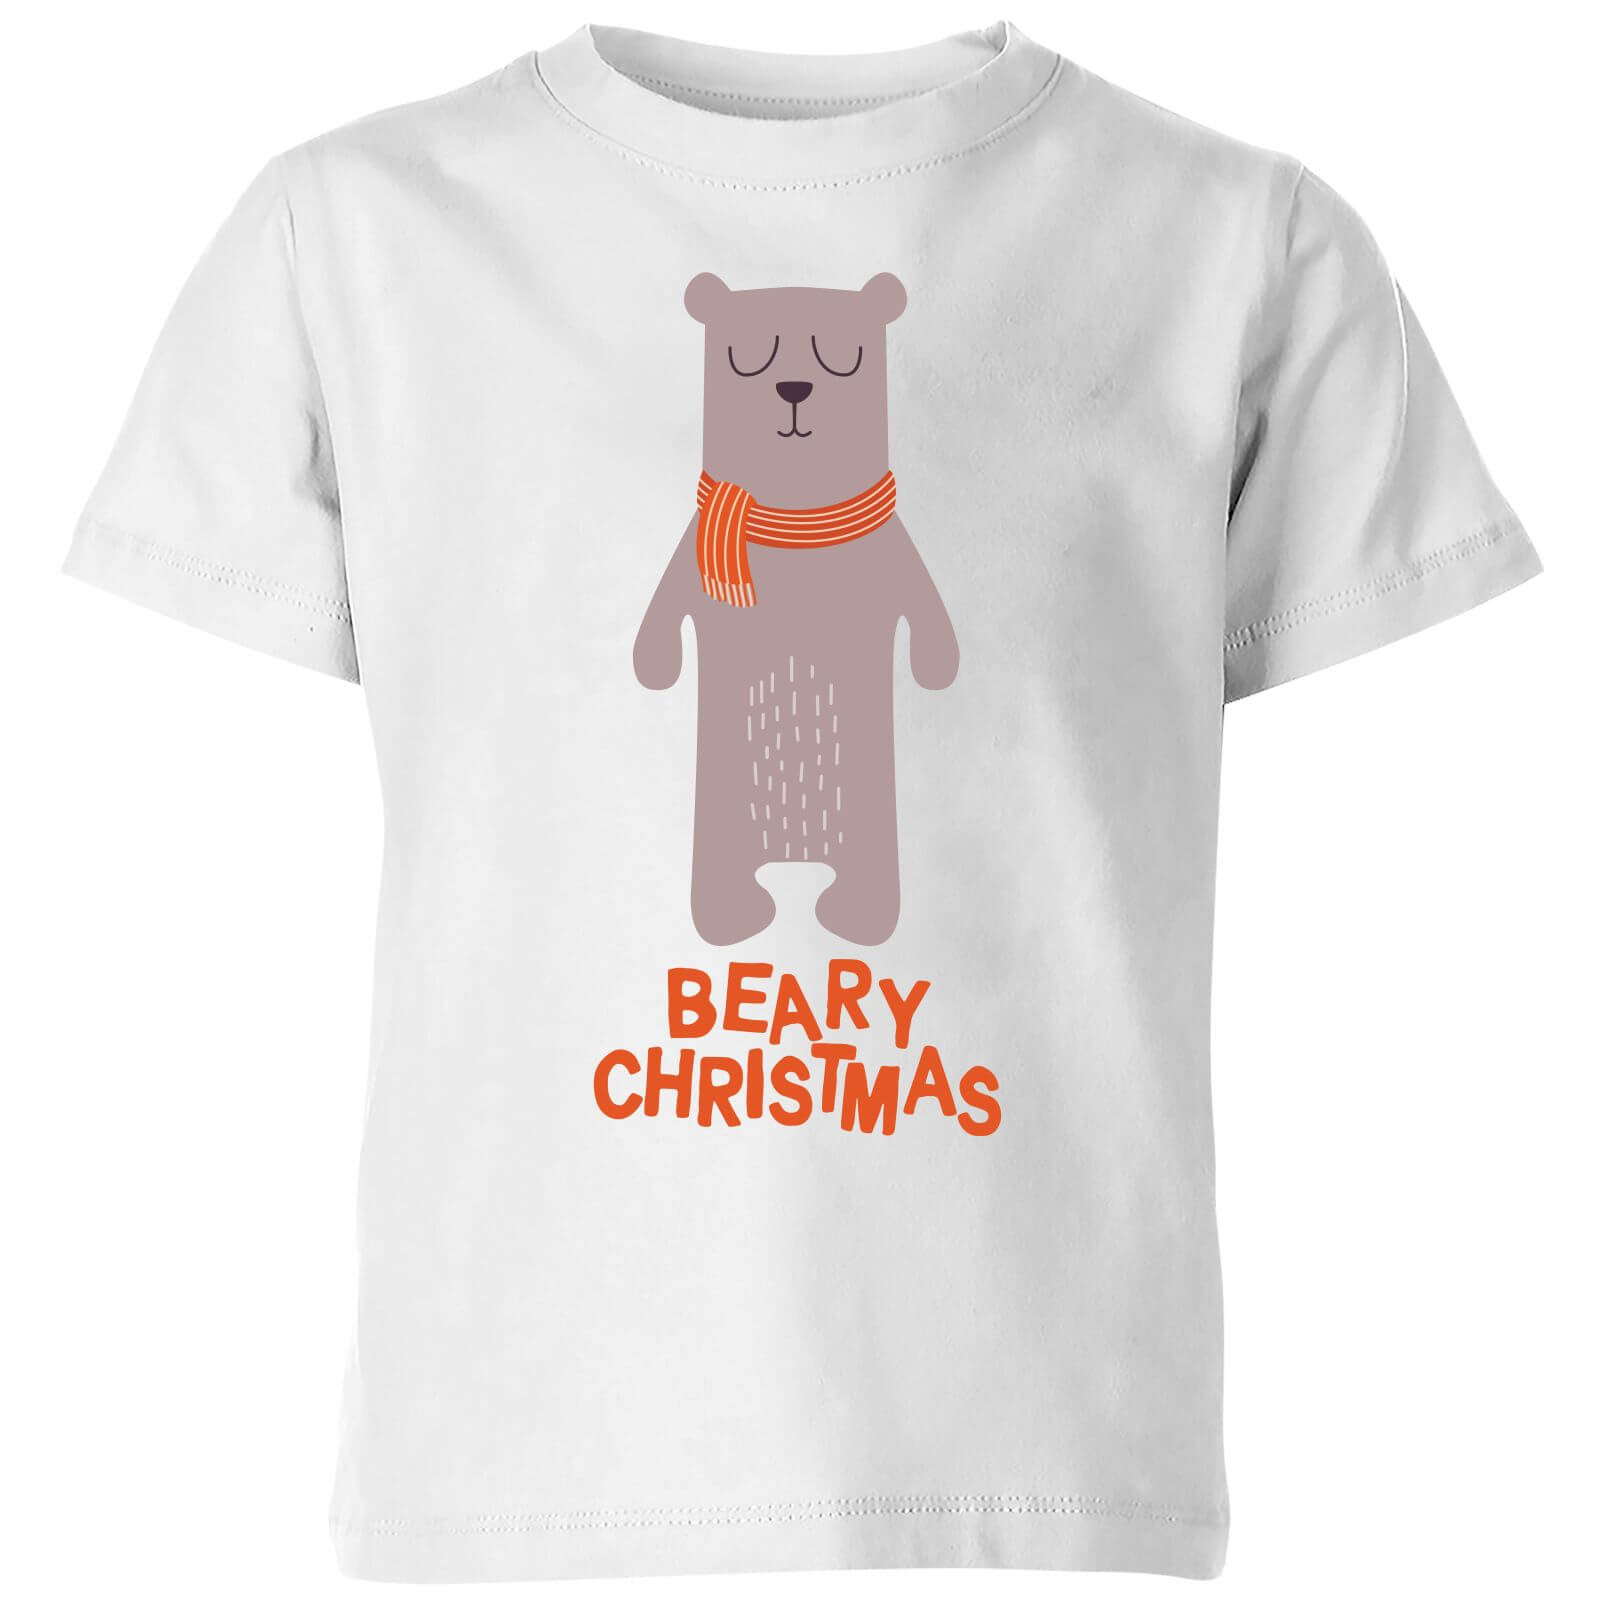 Beary Christmas Kids' T-Shirt - White - 3-4 Years - White